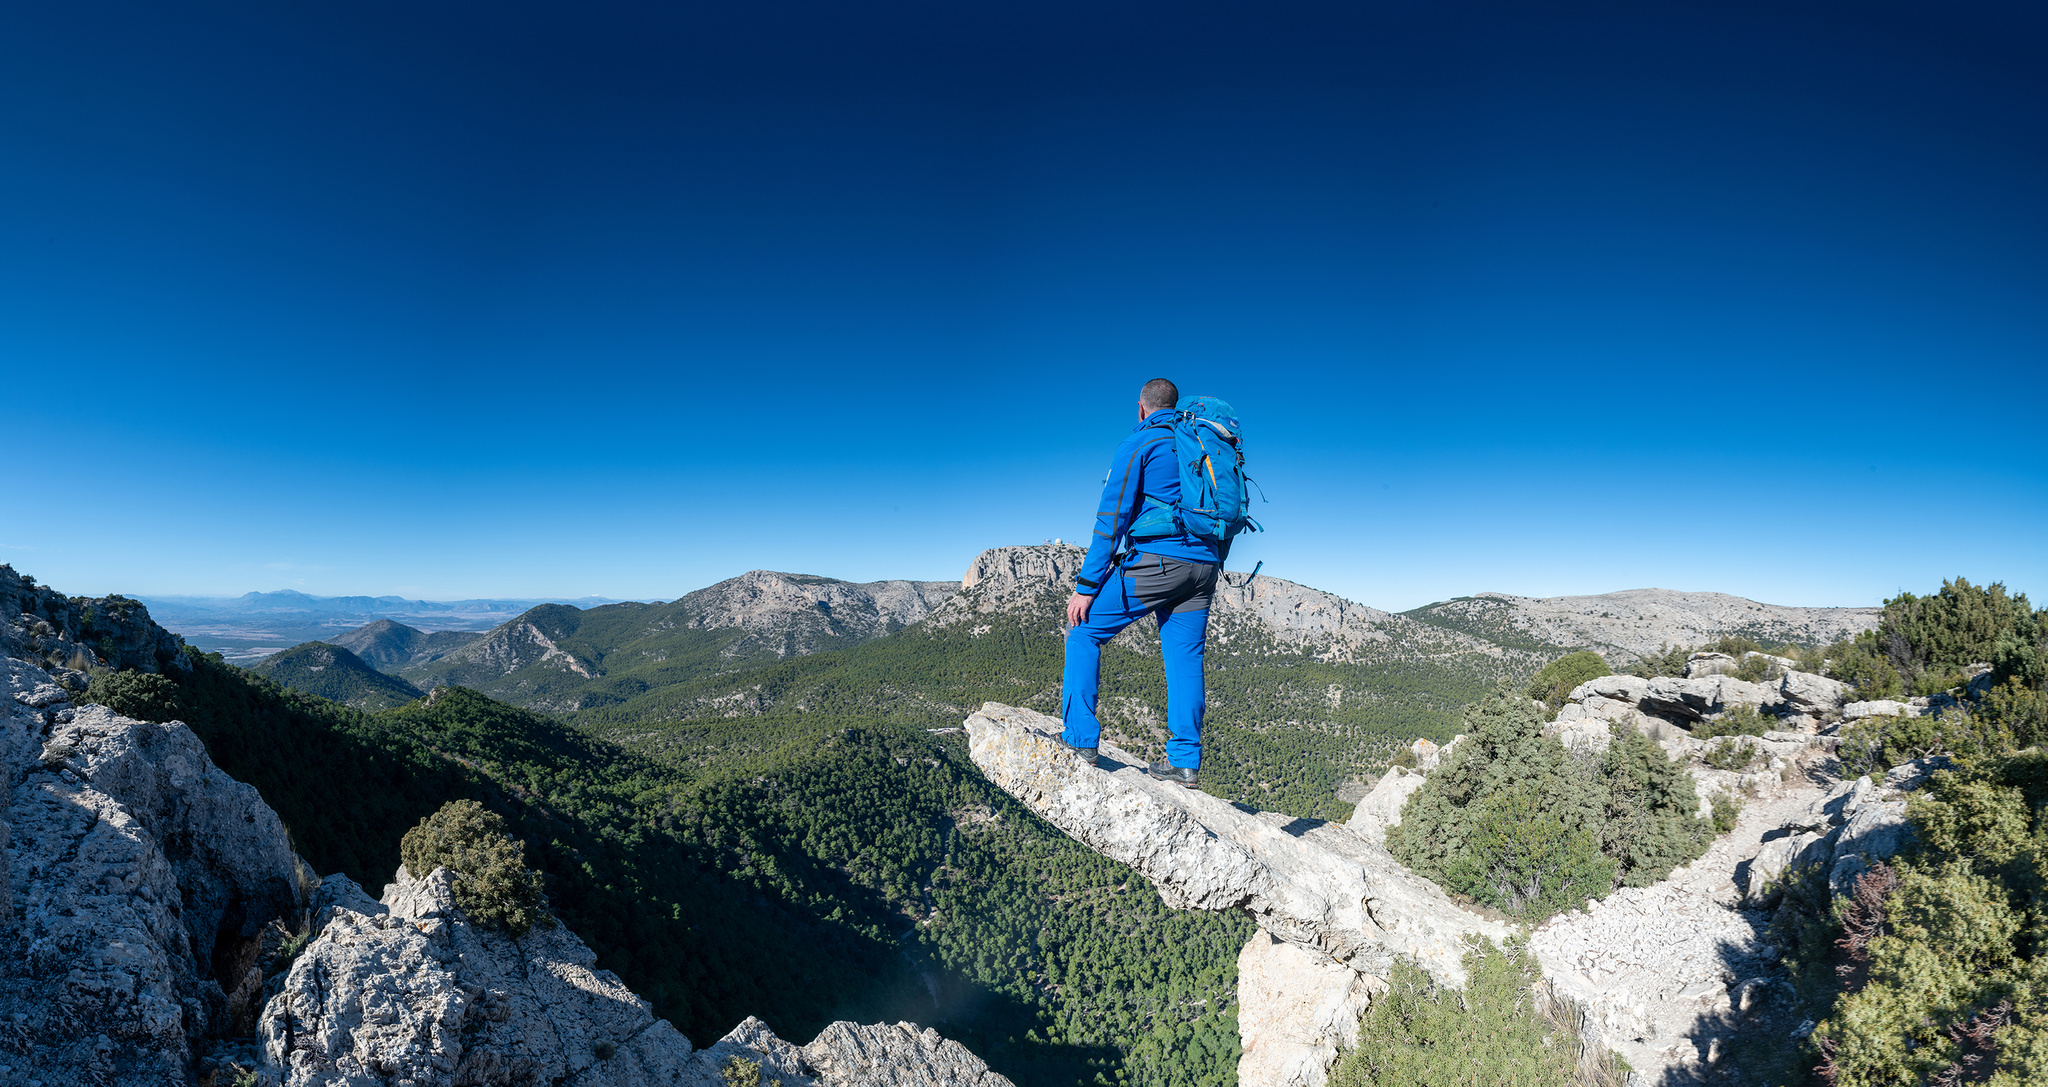 Sierra Espuña constituye la principal apuesta de la Comunidad para convertirse en un destino ecoturista de referencia. Imagen: CARM